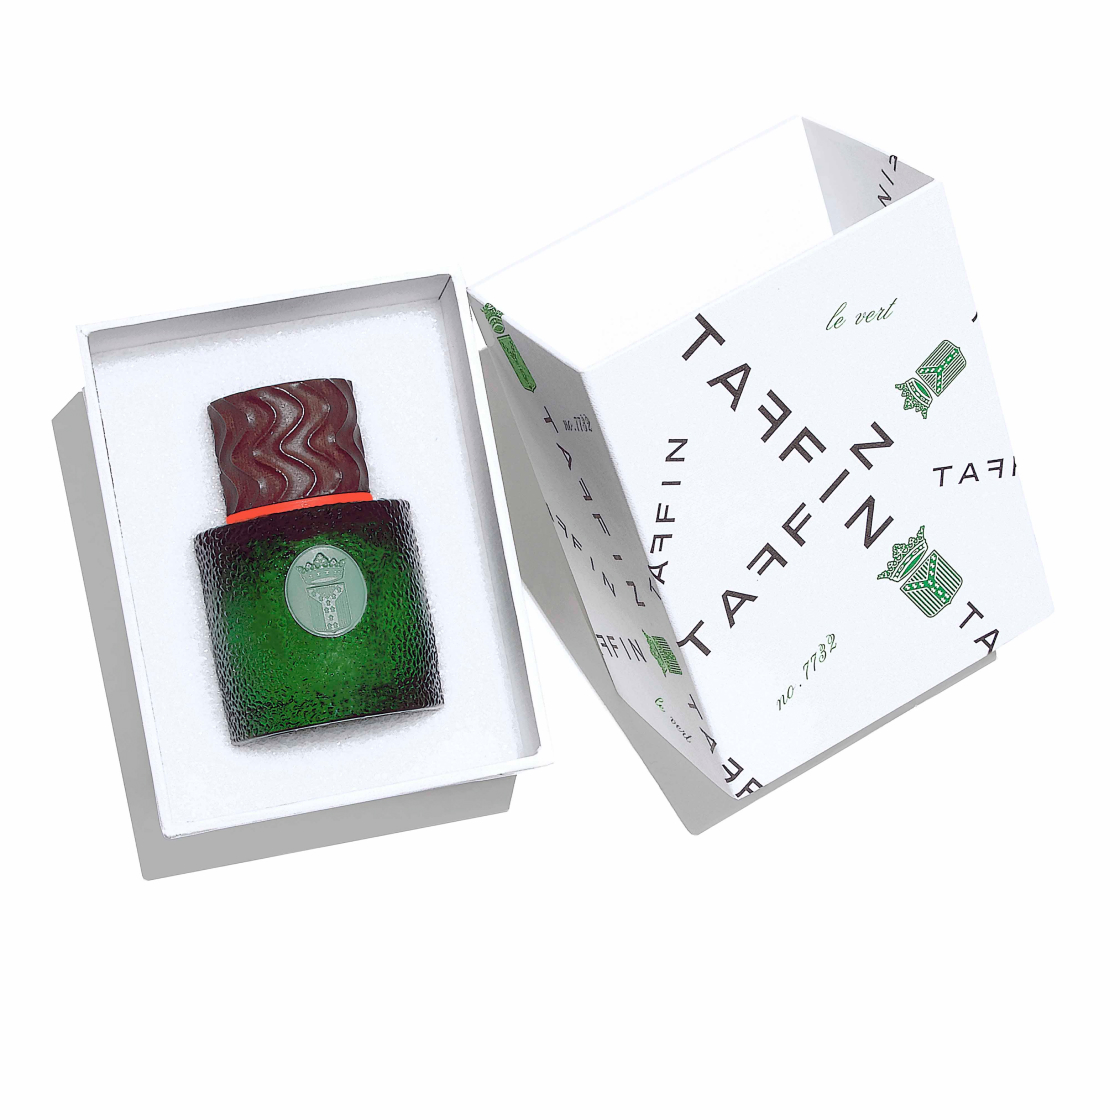 La Maison Tatin - Lamotte-Beuvron : Parfum d'ambiance Jardin de l'aube 50ml